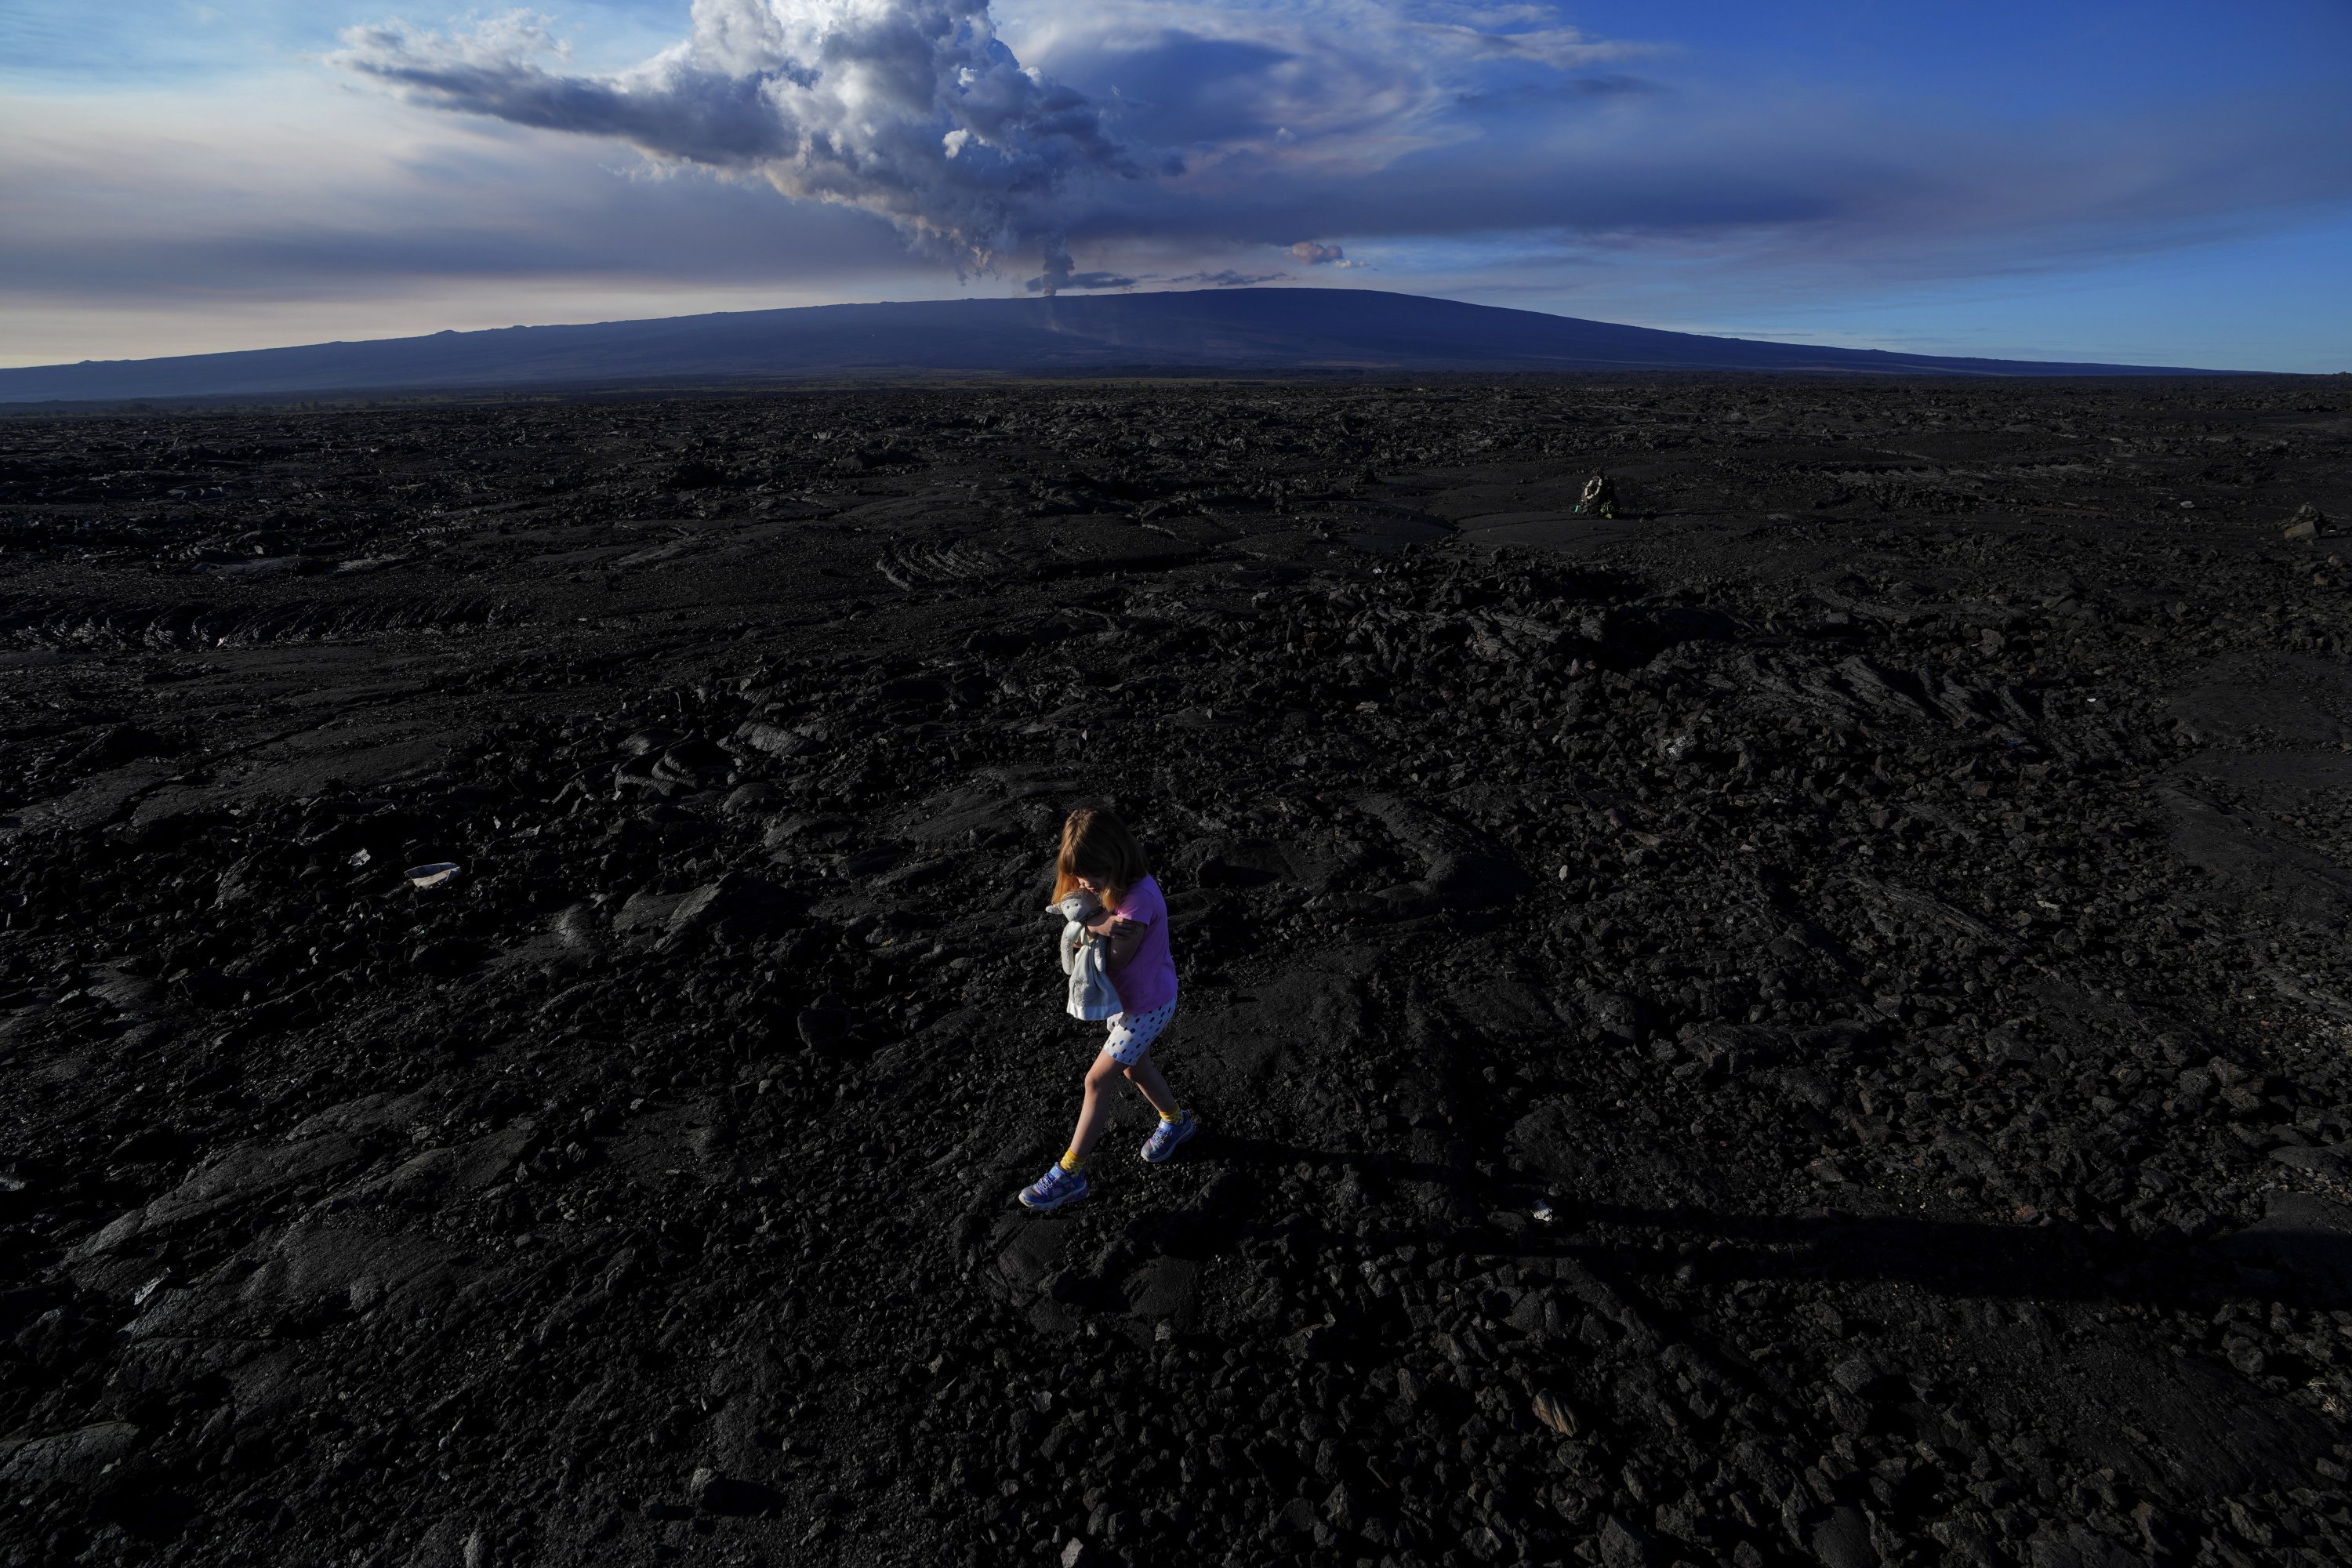 Abigail Dewar, dari Alberta, Kanada, memegang boneka binatang saat berjalan di atas batu lava yang mengeras dari letusan sebelumnya saat gunung berapi Mauna Loa meletus, dekat Hilo, Hawaii, AS, 30 November 2022. (Foto AP)